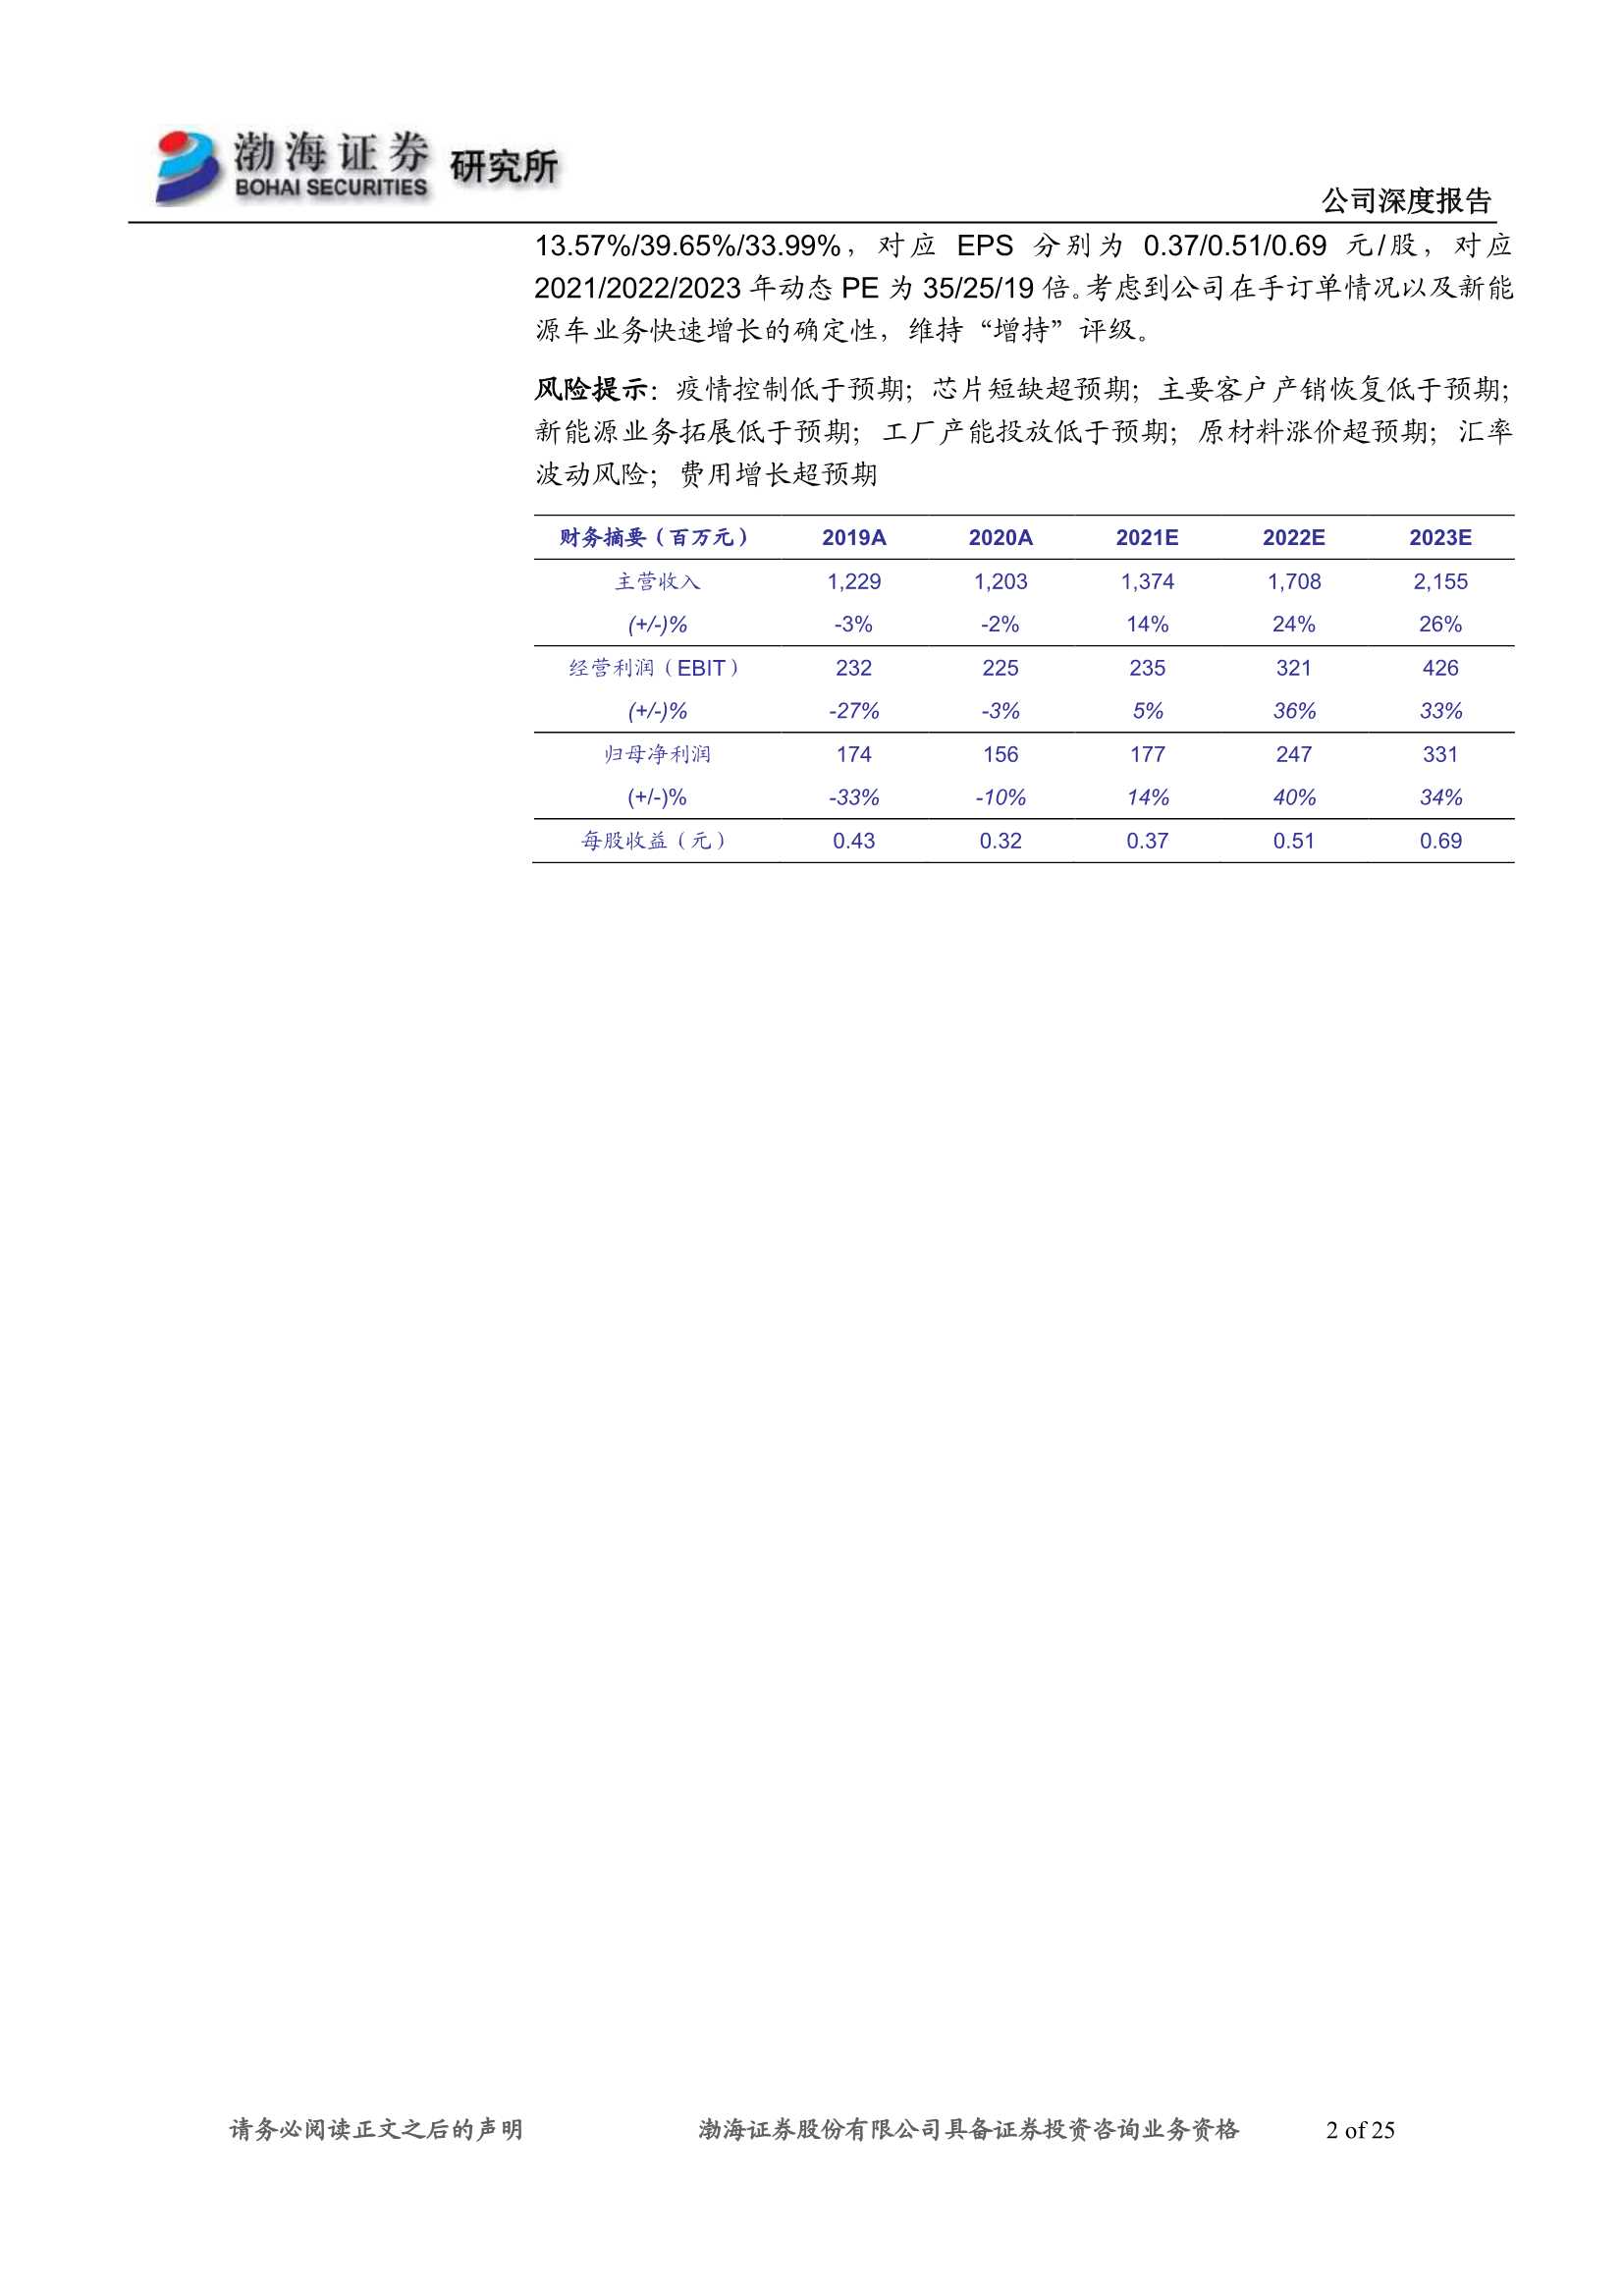 渤海证券-精锻科技-300258-深度报告：阳光总在风雨后，“精”耕细作待时飞-20211228-25页